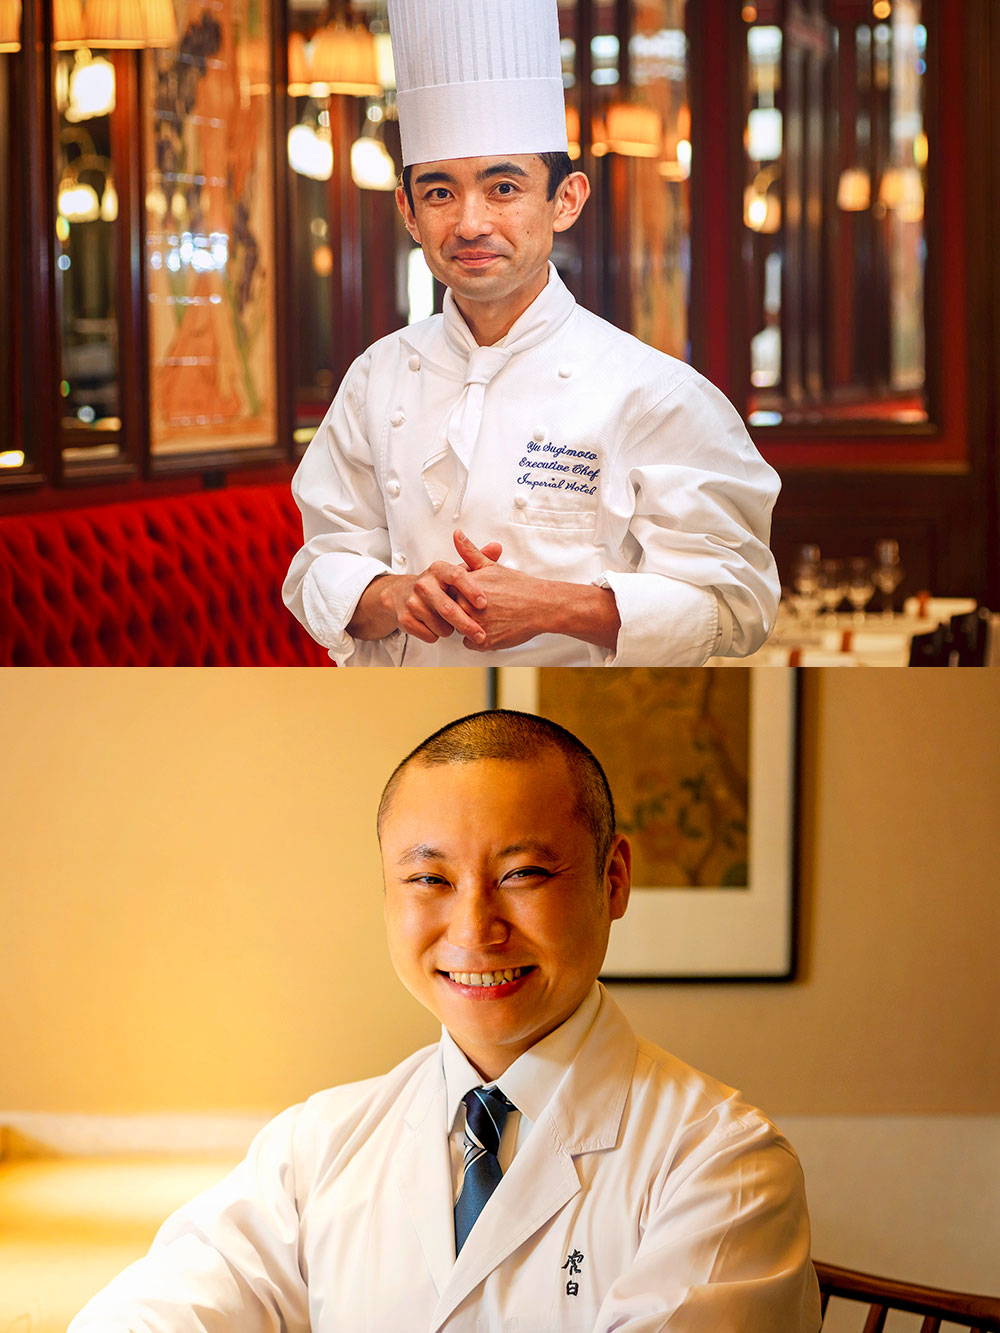 上：東京料理長、杉本 雄さん。
下：「帝国ホテル 寅黒」調理責任者、鷹見将志さん。